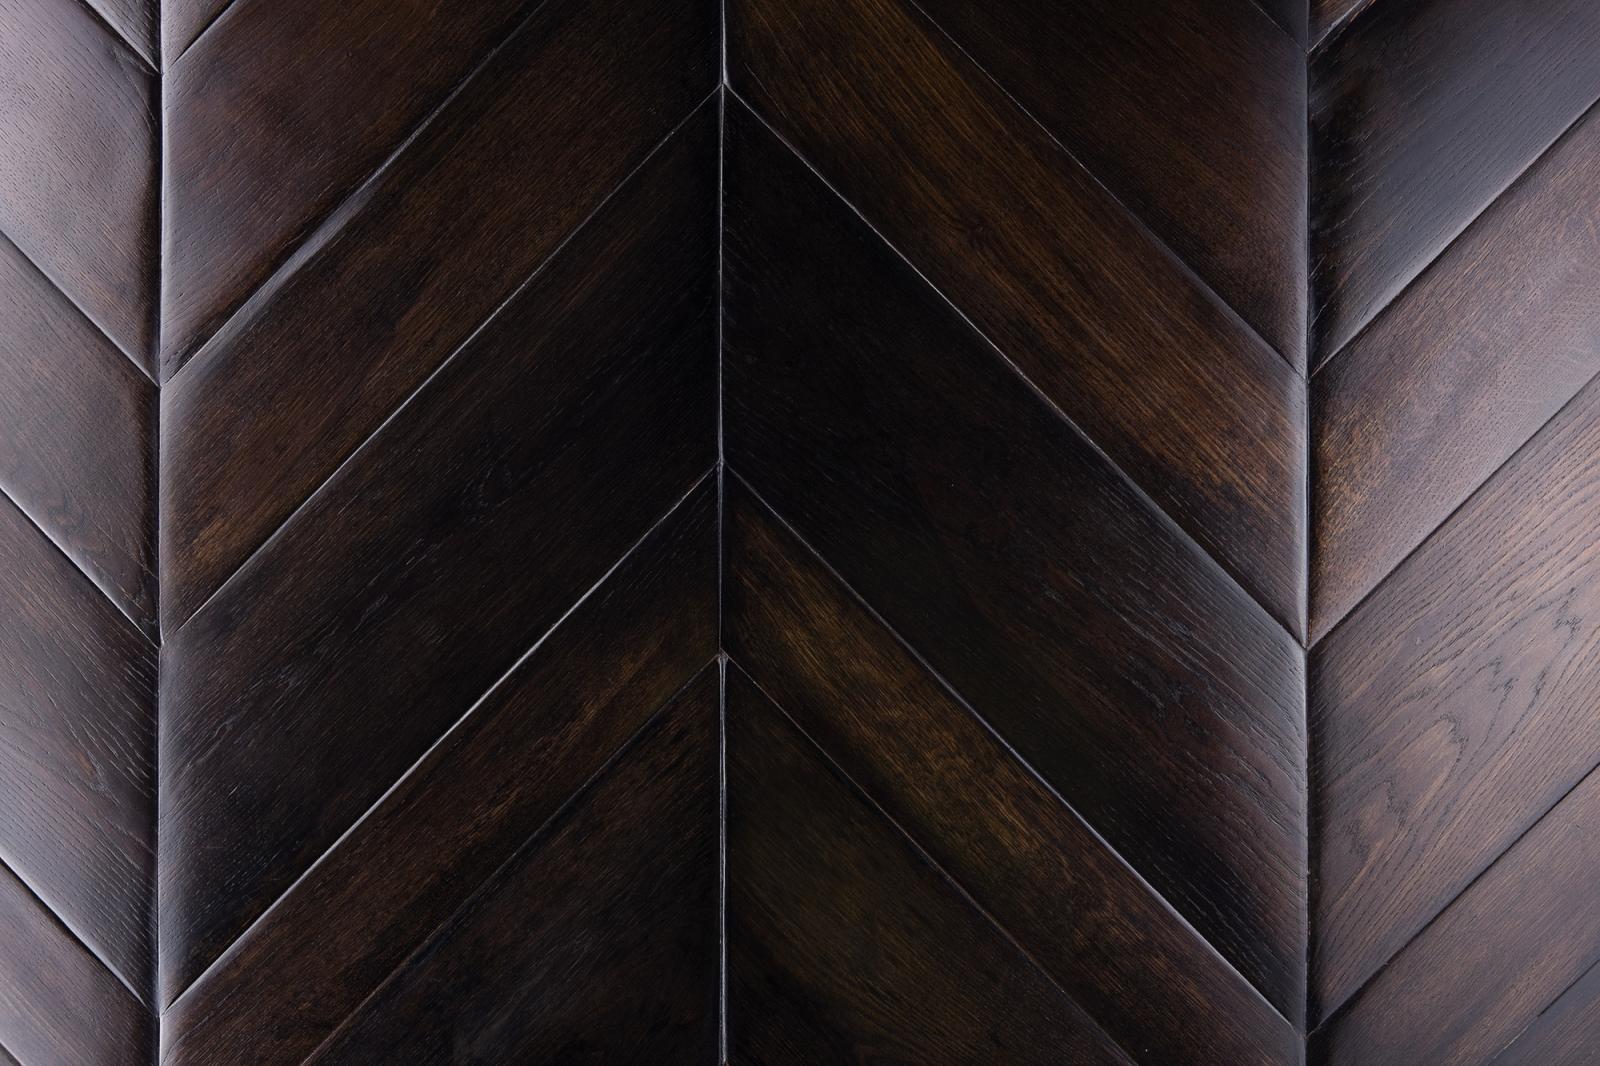 lemma wooden floor dark color